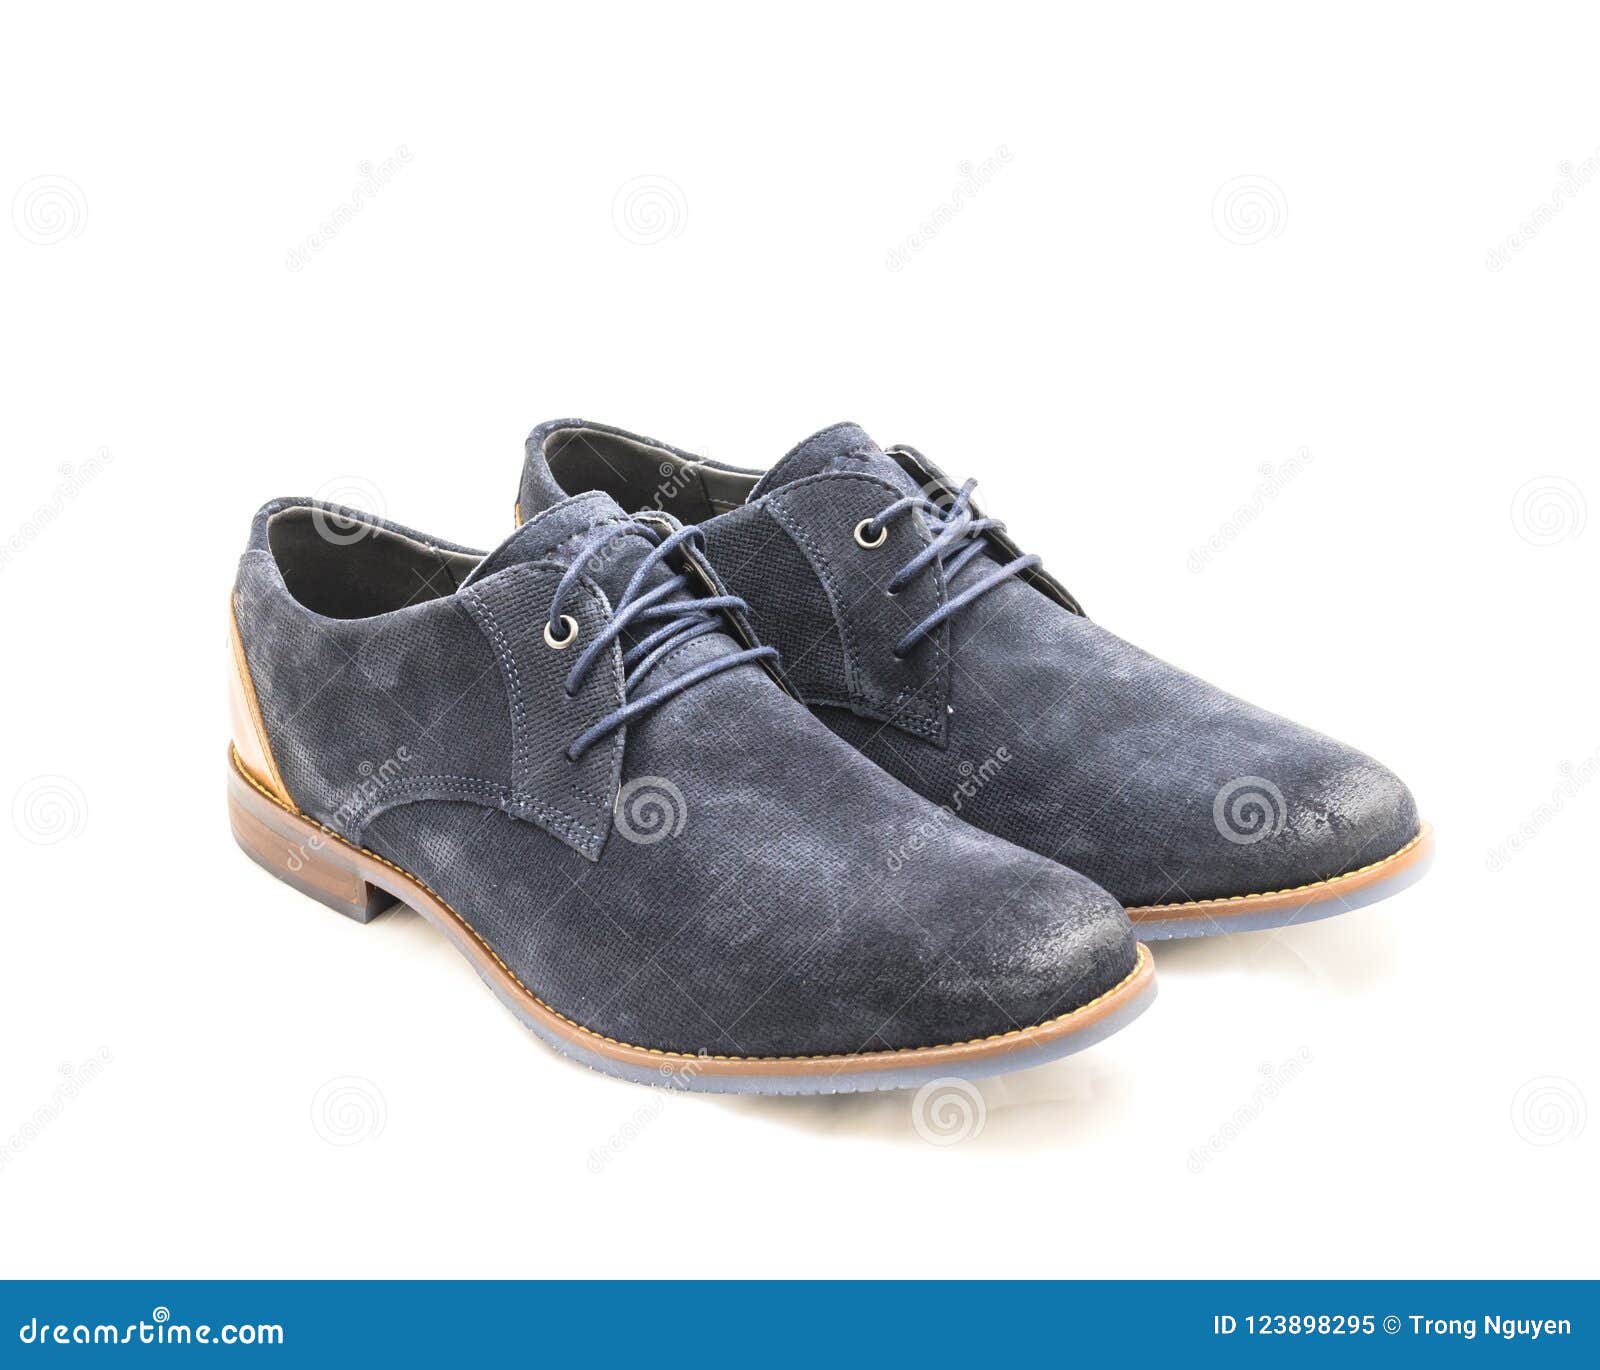 dark blue formal shoes